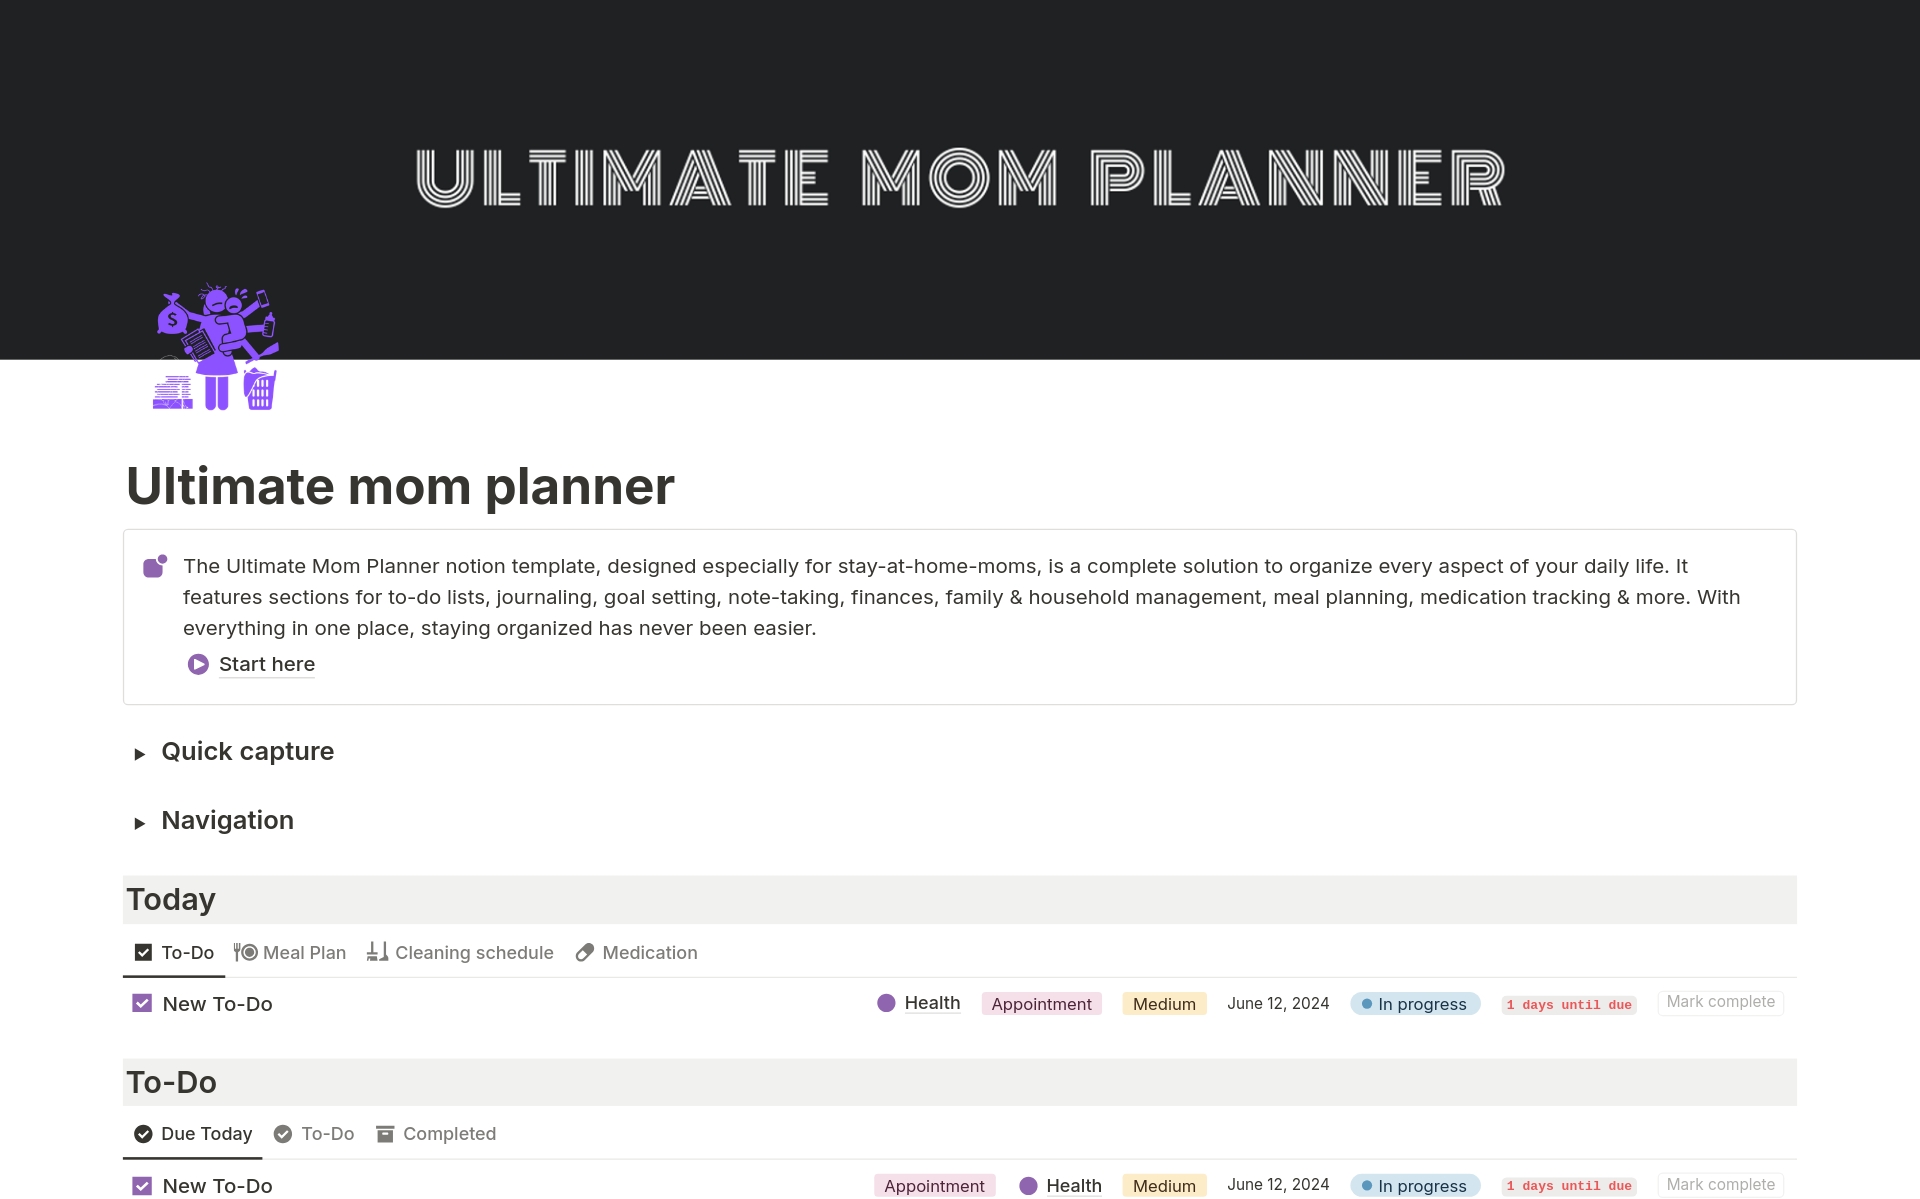 Uma prévia do modelo para Ultimate mom planner